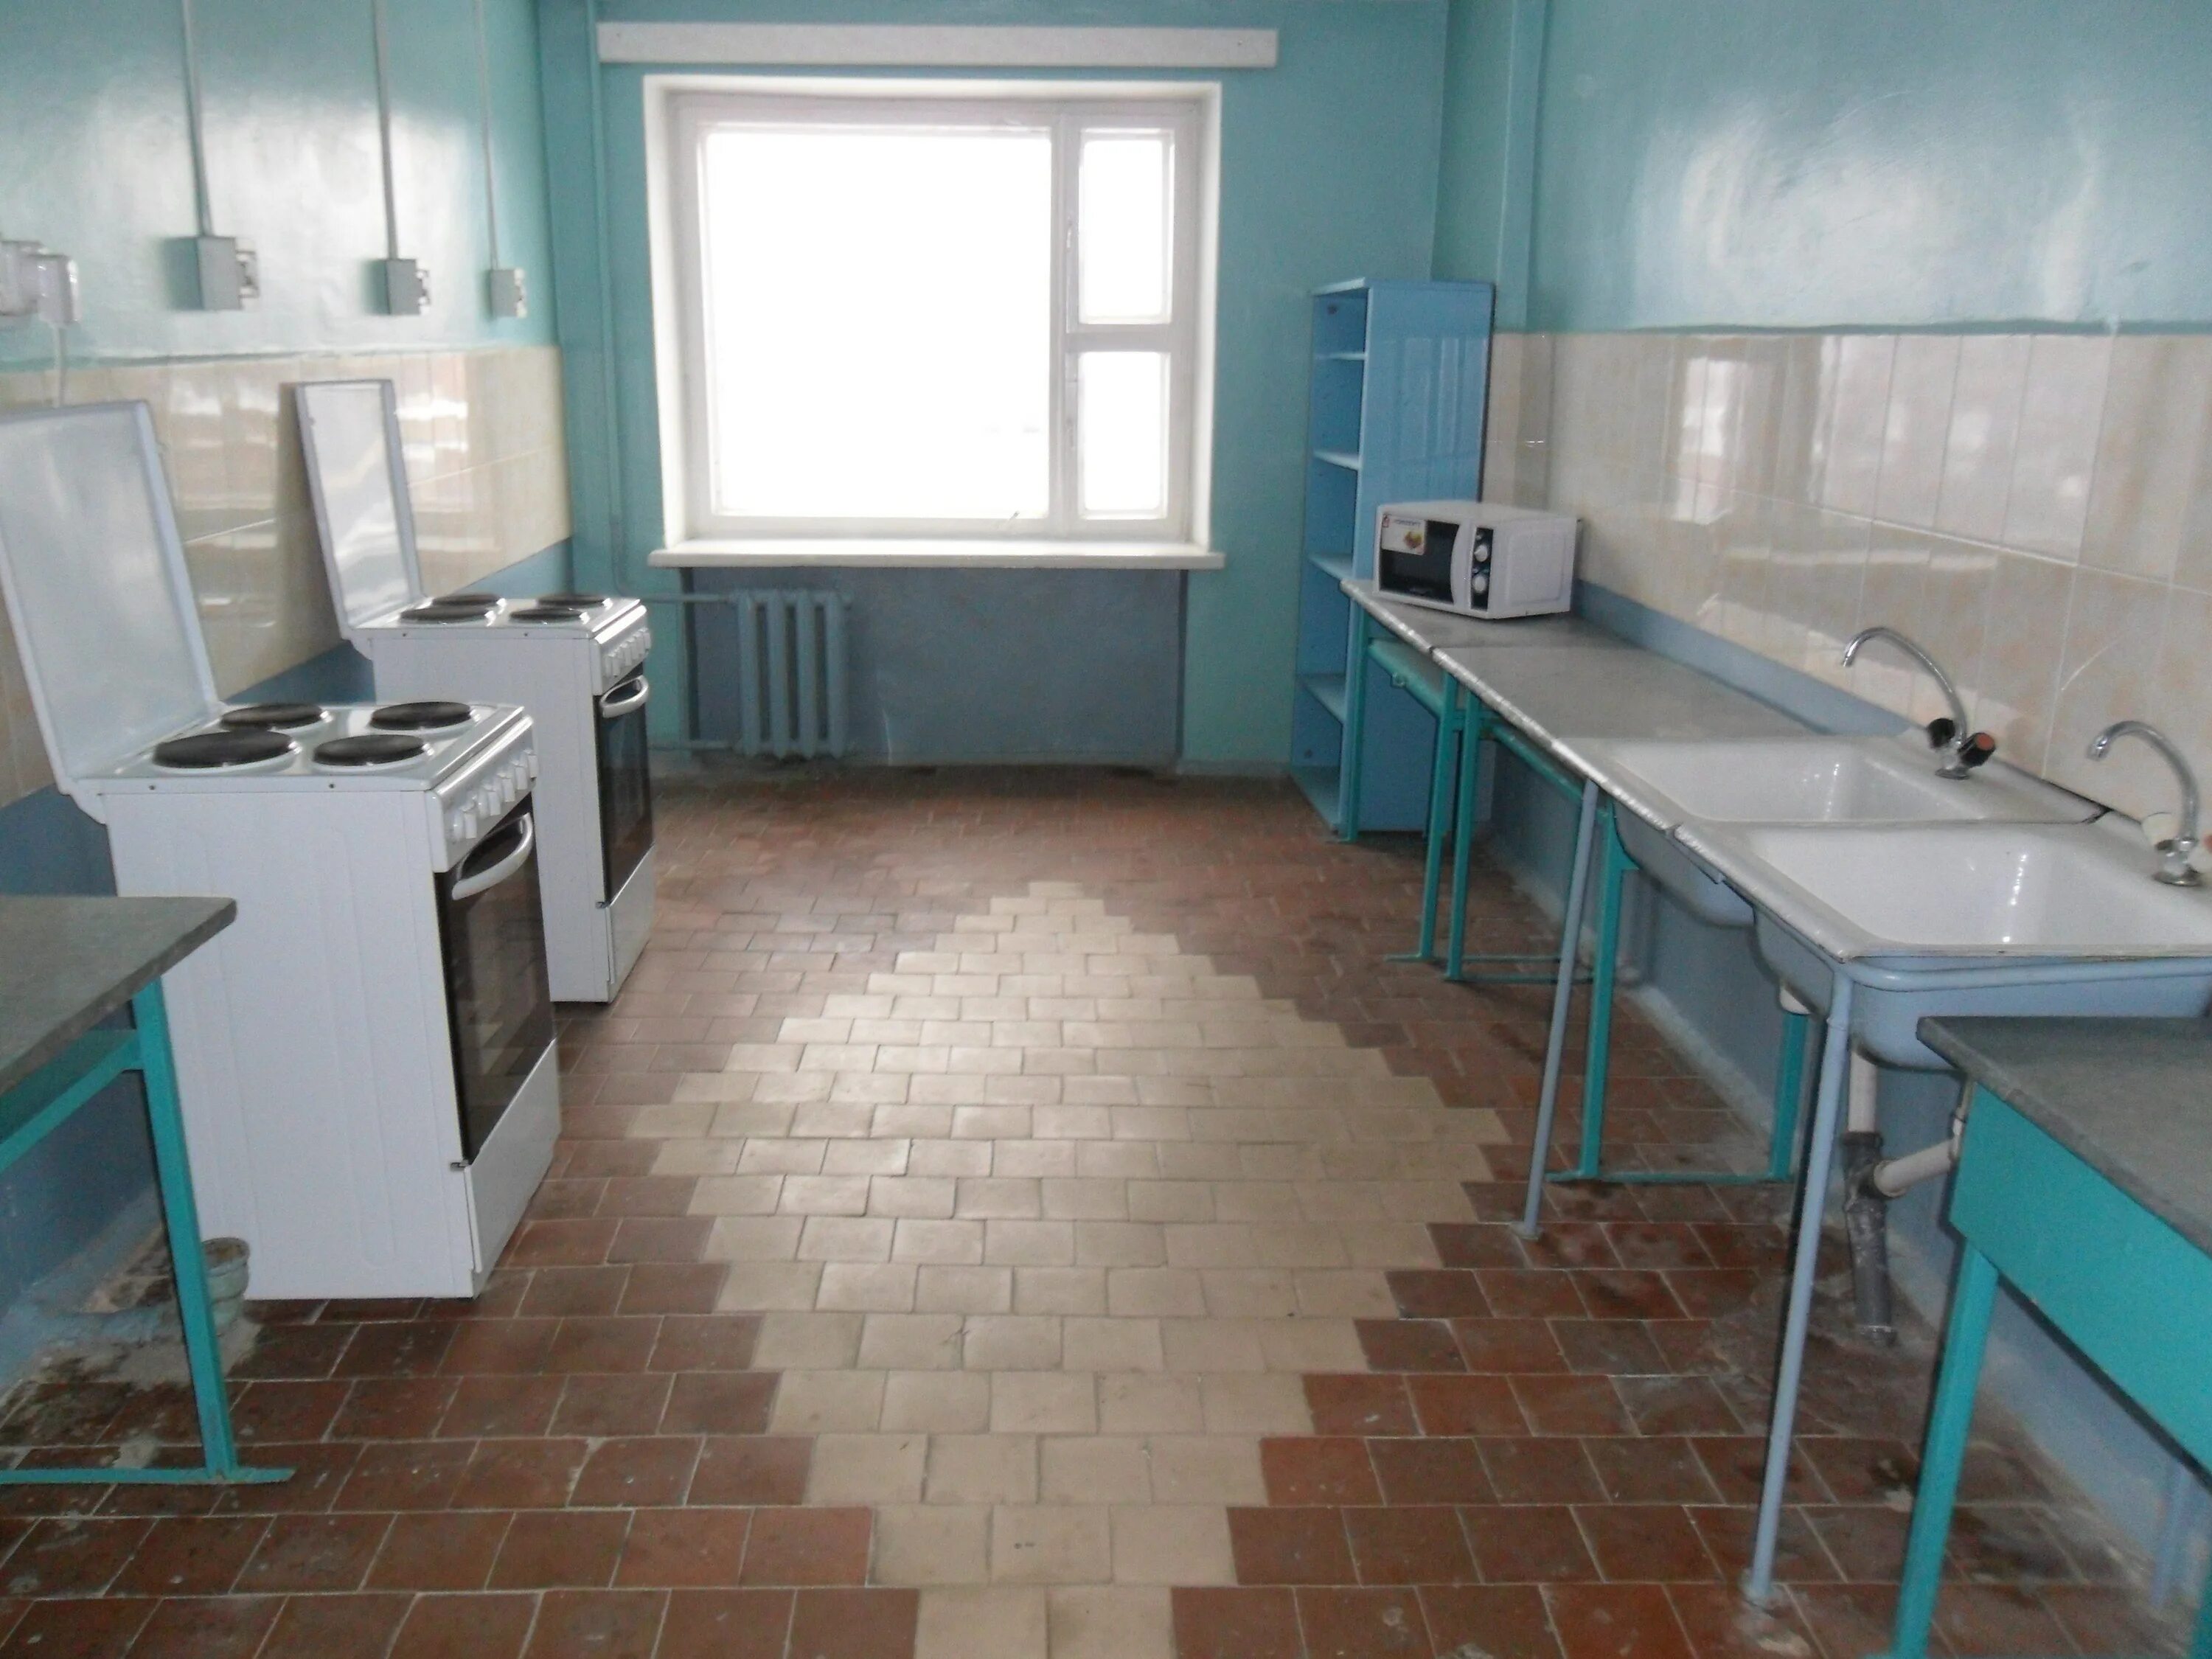 Кухня в общежитии. Кухня в студенческом общежитии. Кухня в общежитии дизайн. Общая кухня в общежитии